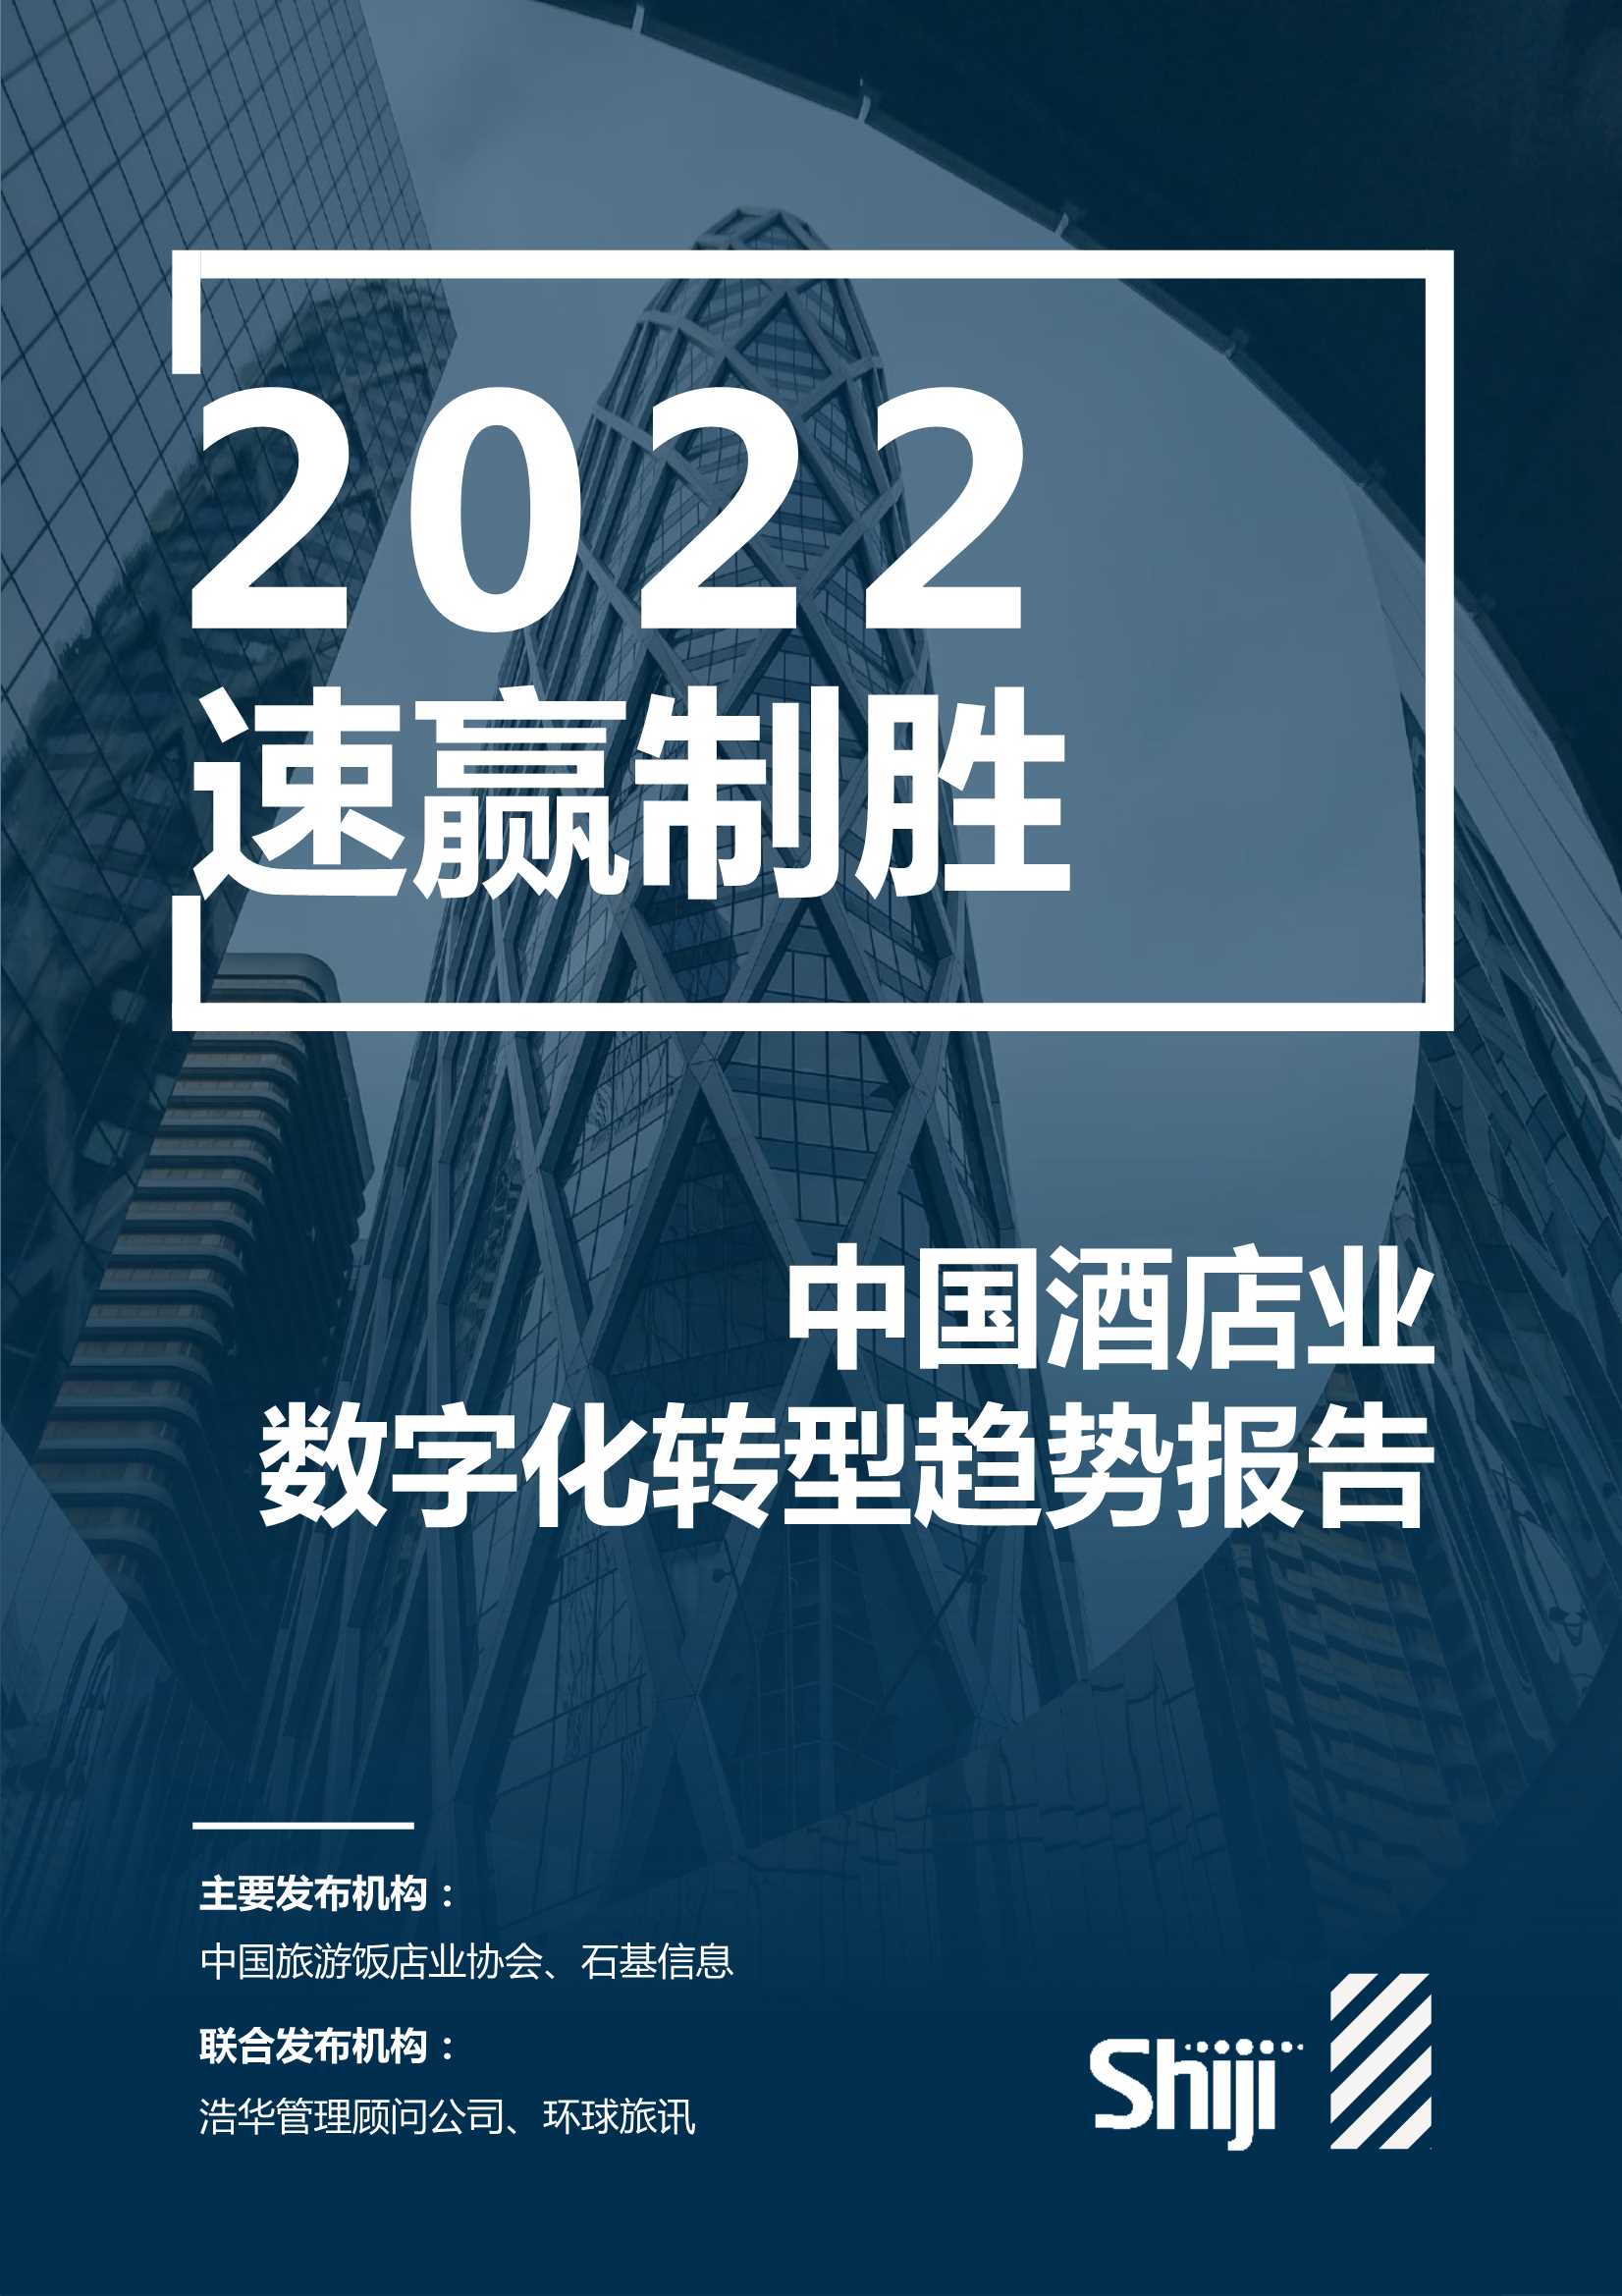 石基信息-2022年中国酒店业数字化转型趋势报告-2022.02-100页